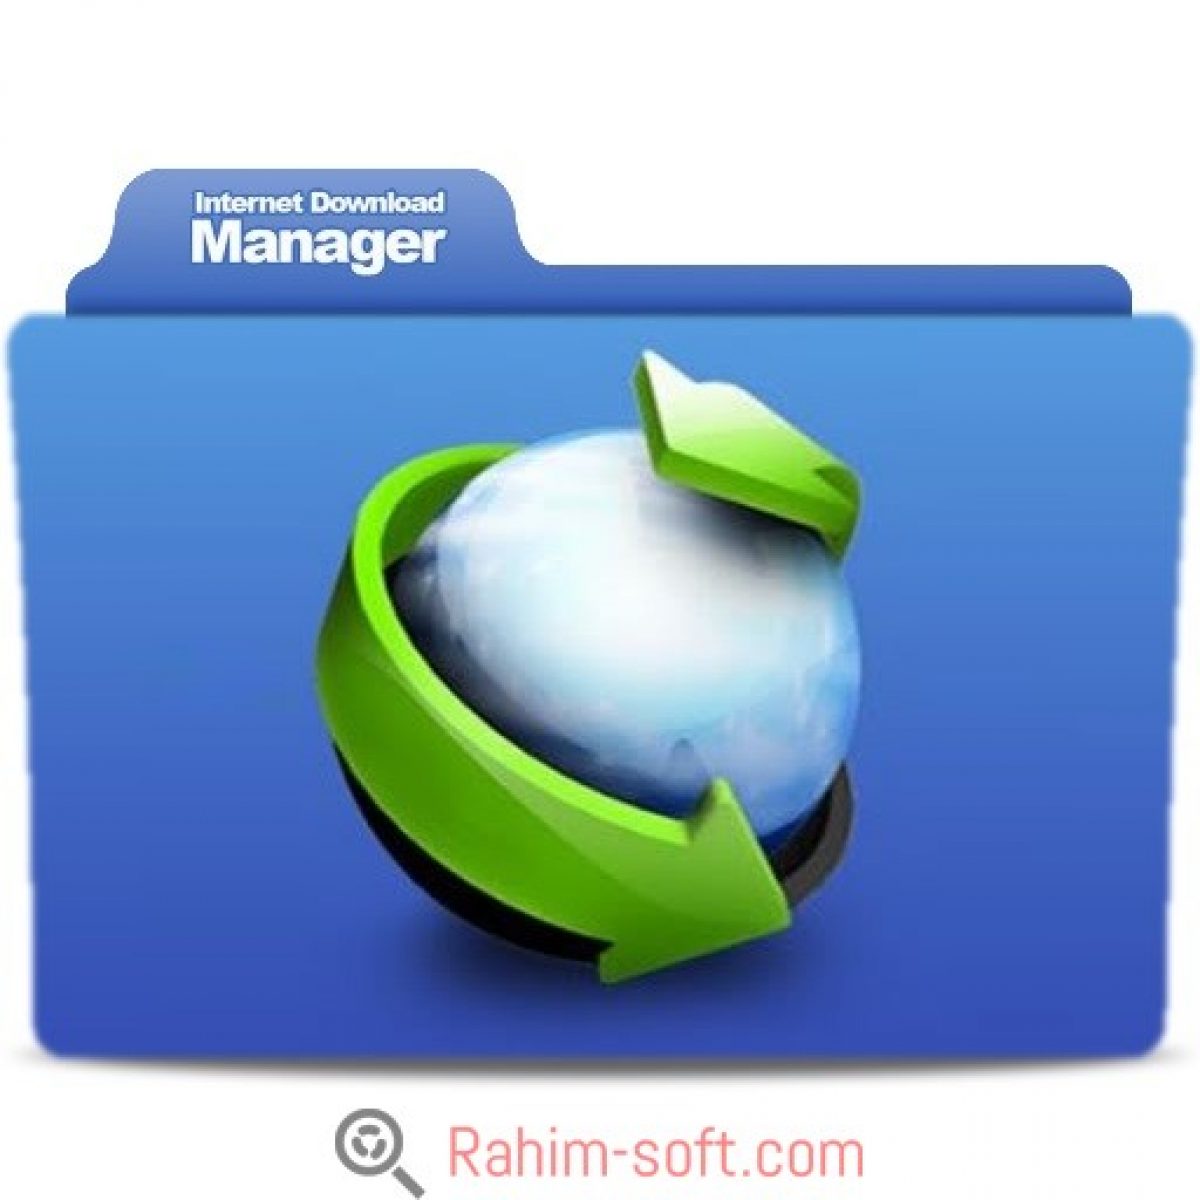 internet download manager crack version for windows 10 64 bit